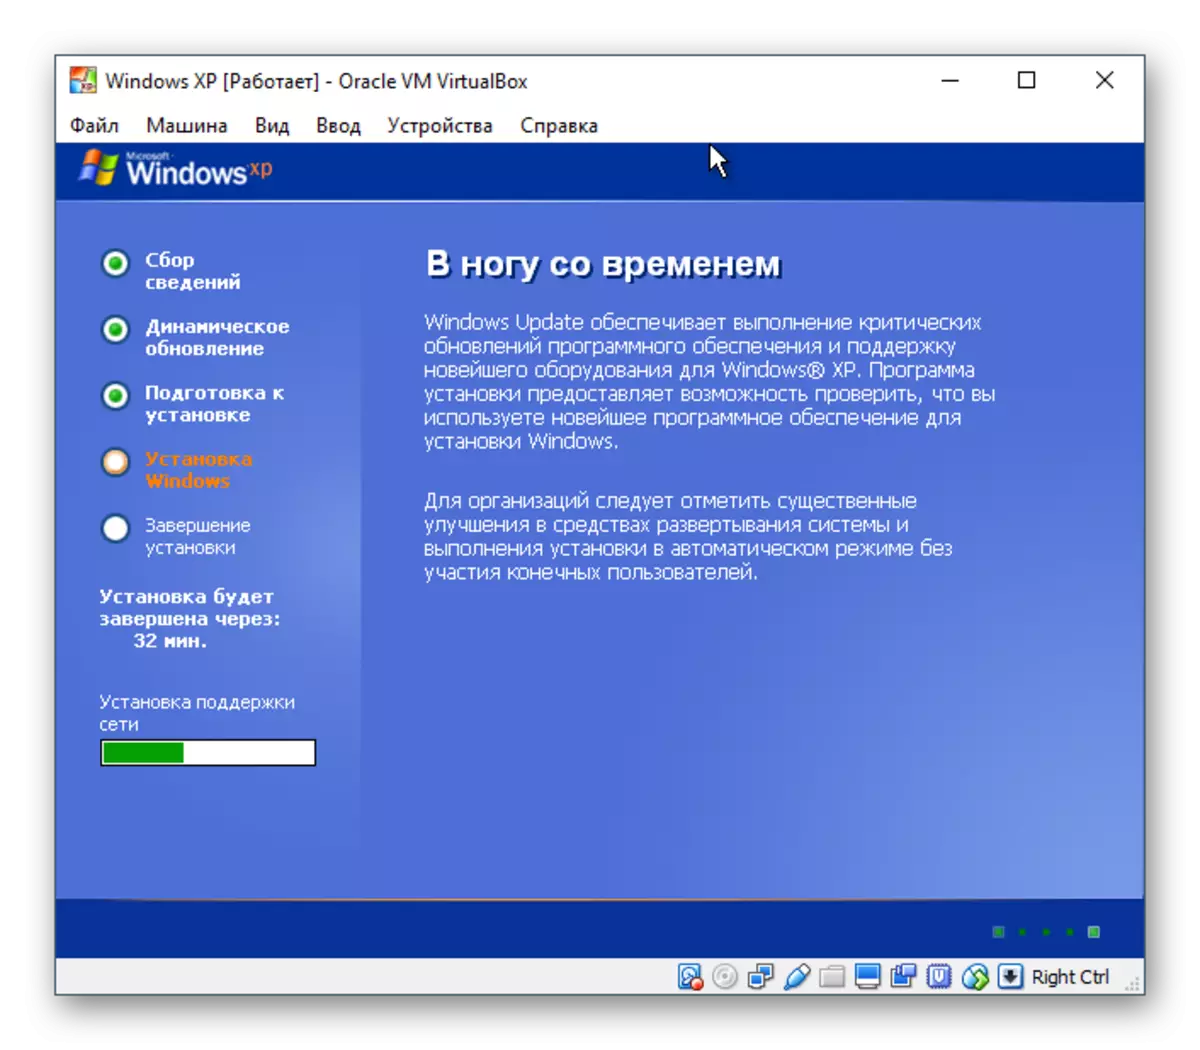 Mga setting ng network ng Windows XP sa VirtualBox.